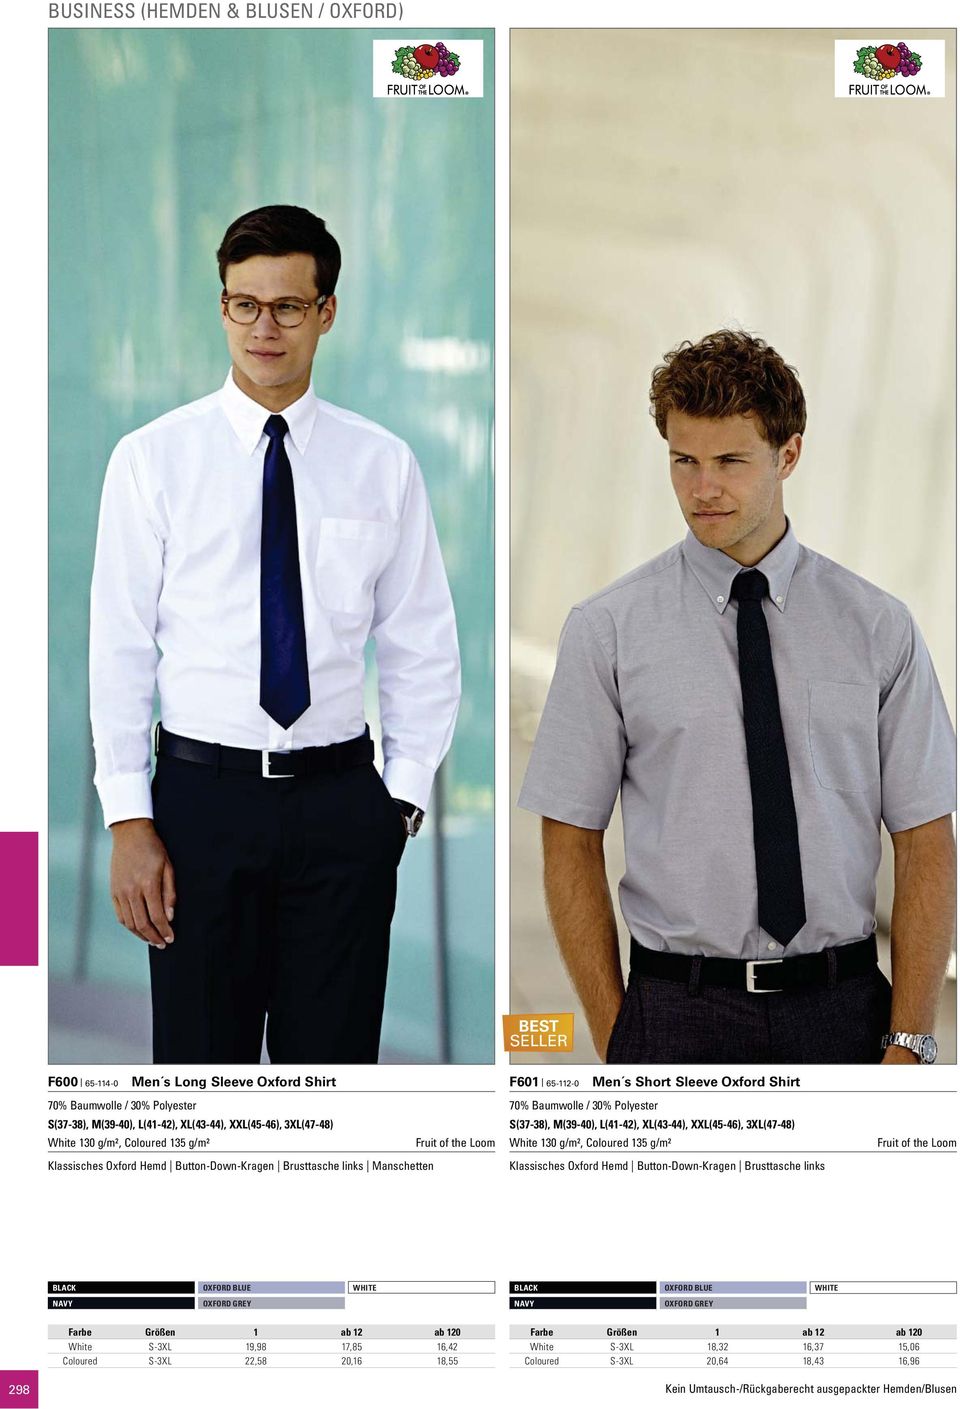 Baumwolle / 30% Polyester S(37-38), M(39-40), L(41-42), XL(43-44), XXL(45-46), 3XL(47-48) White 130 g/m², Coloured 135 g/m² Klassisches Oxford Hemd Button-Down-Kragen Brusttasche links